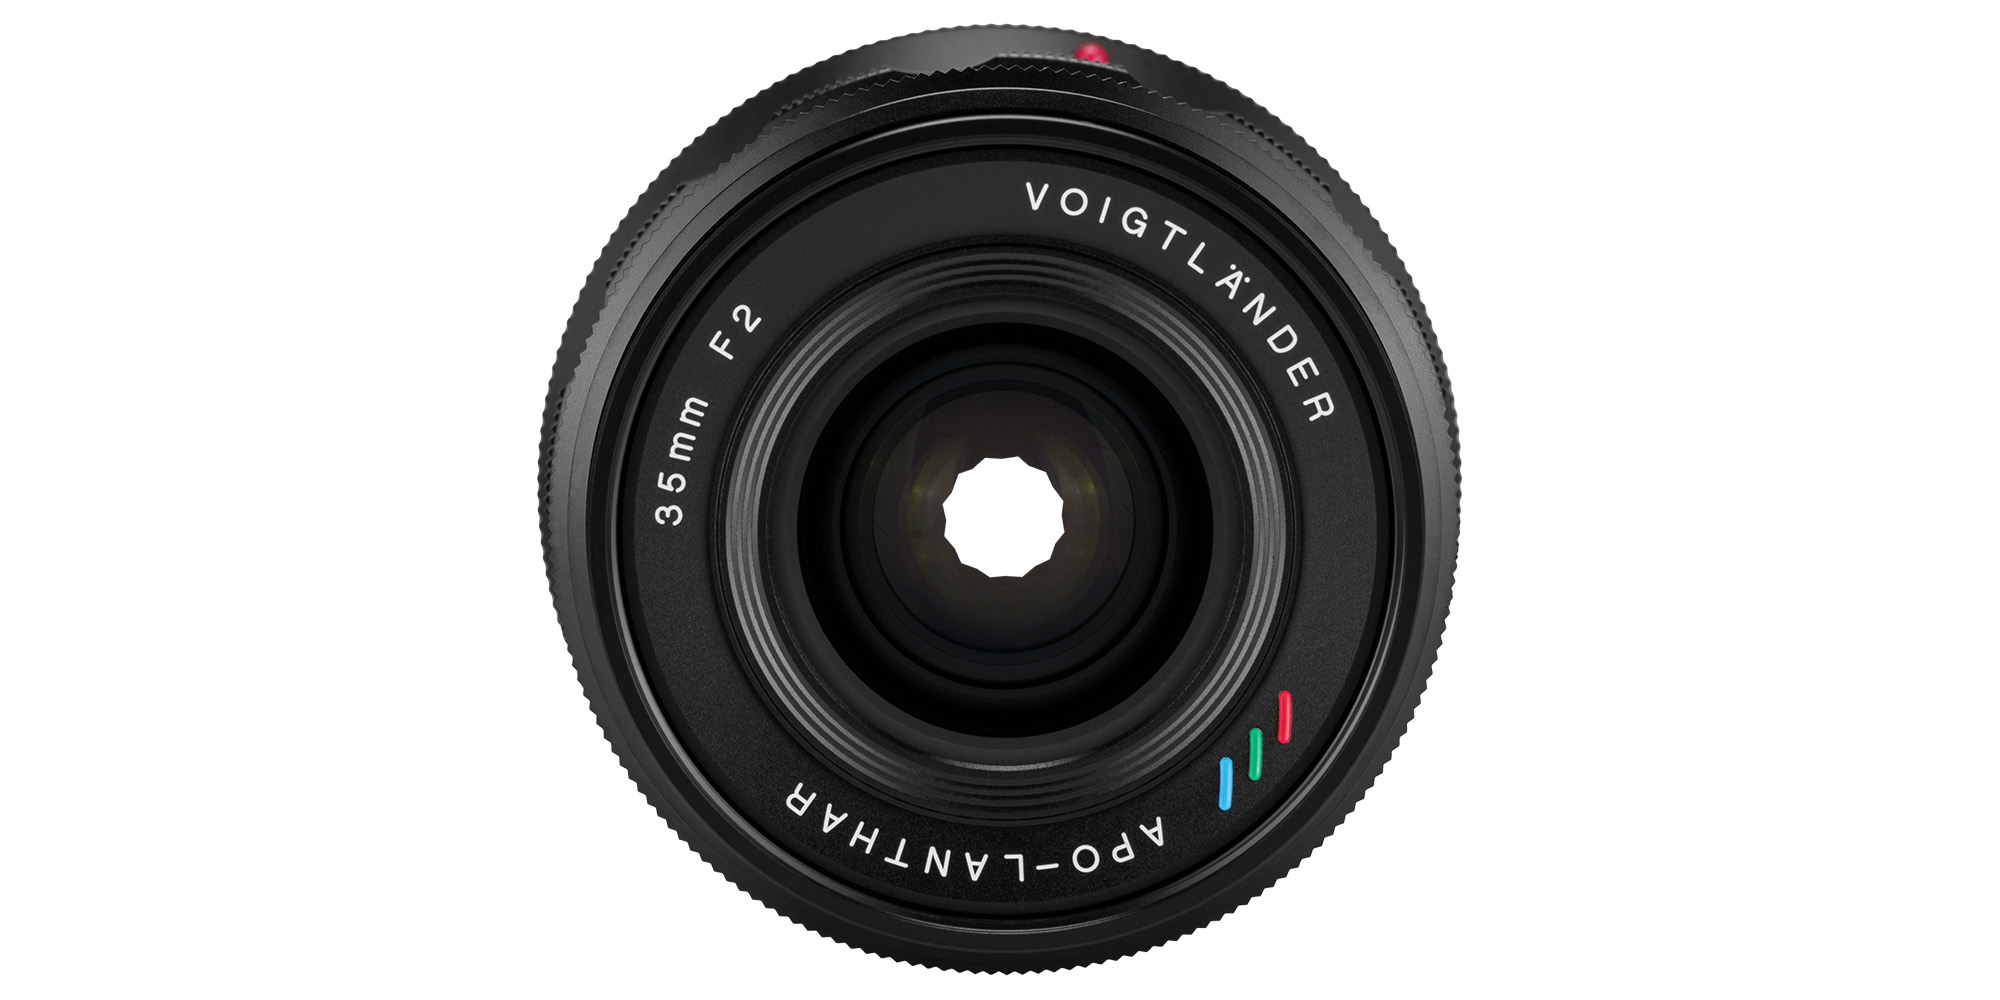 Obiektyw Voigtlander APO Lanthar 35 mm f/2,0 do Nikon Z - Płynna kontrola nad światłem